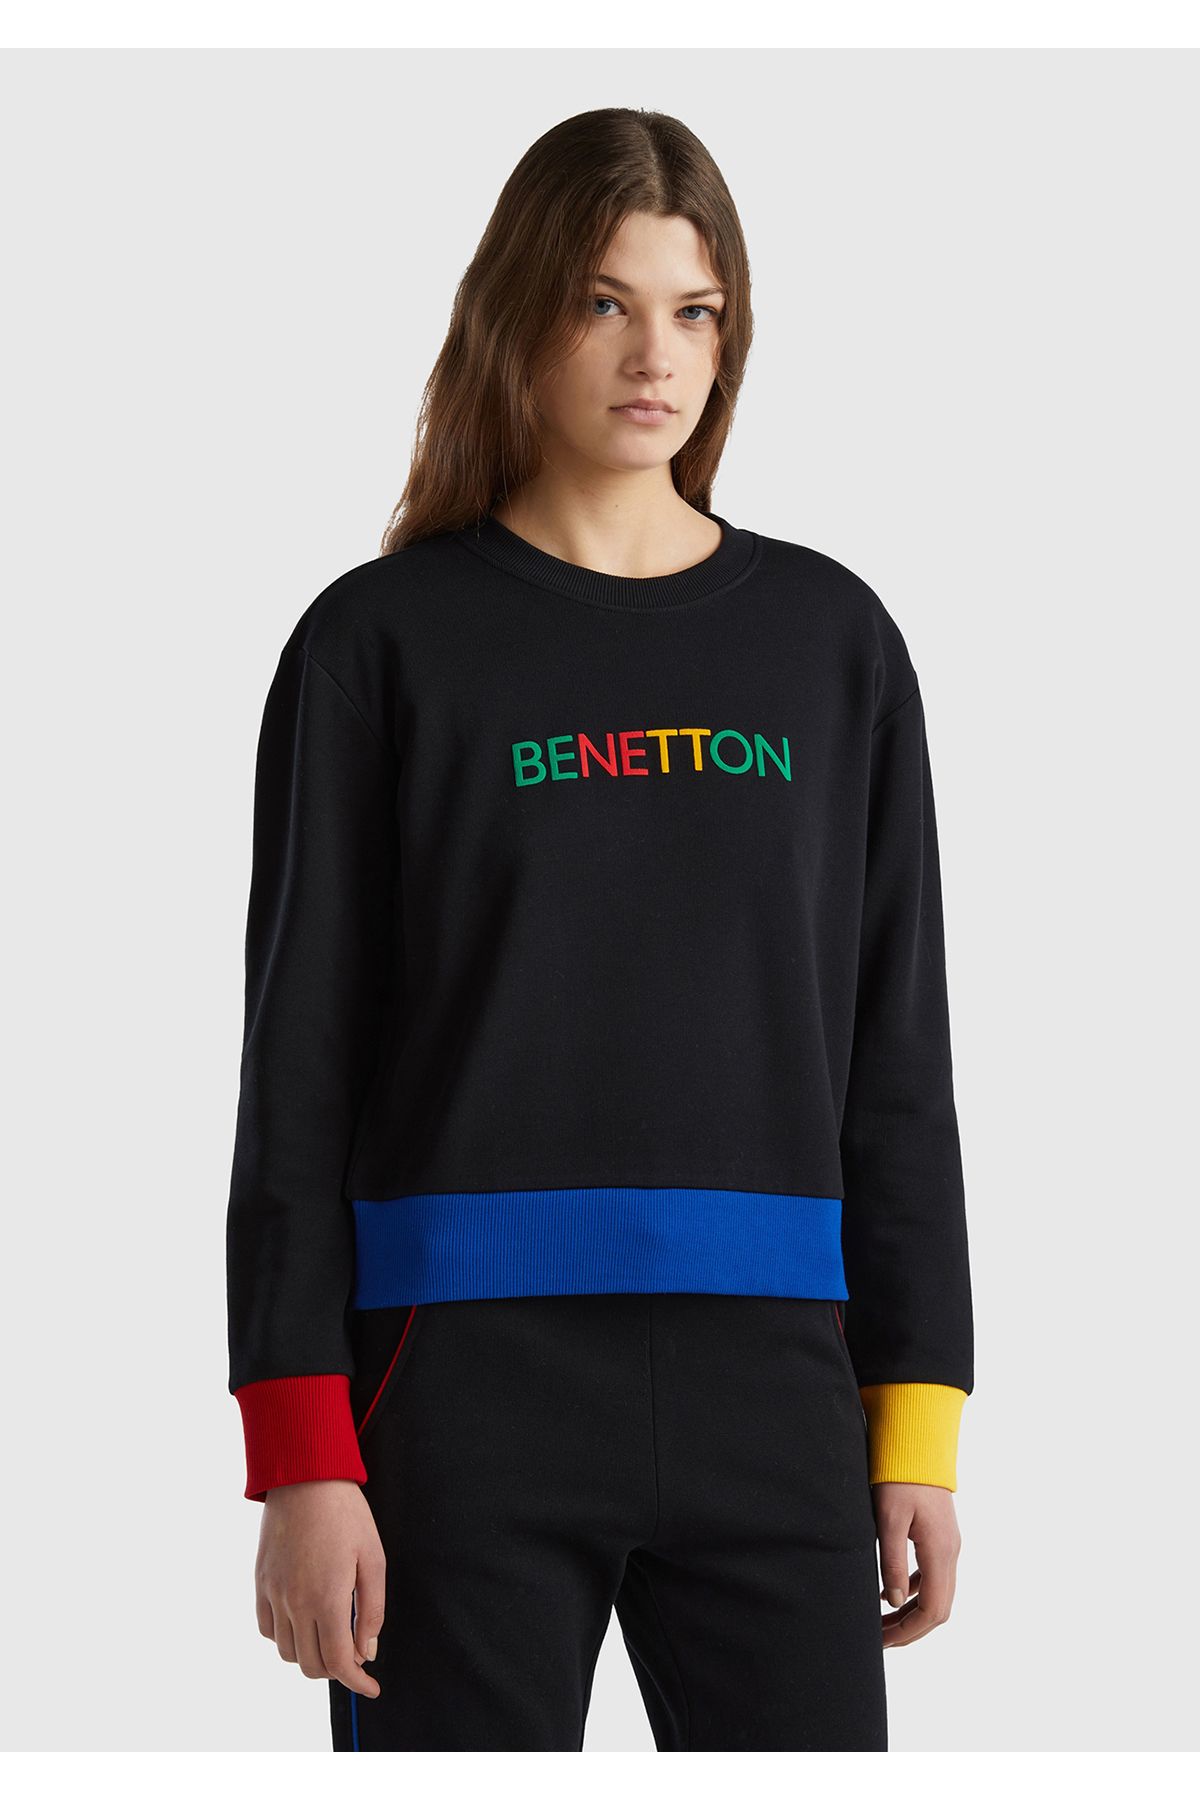 United Colors of Benetton Kadın Siyah %100 Pamuk Benetton Yazılı Bisiklet Yaka Sweatshirt